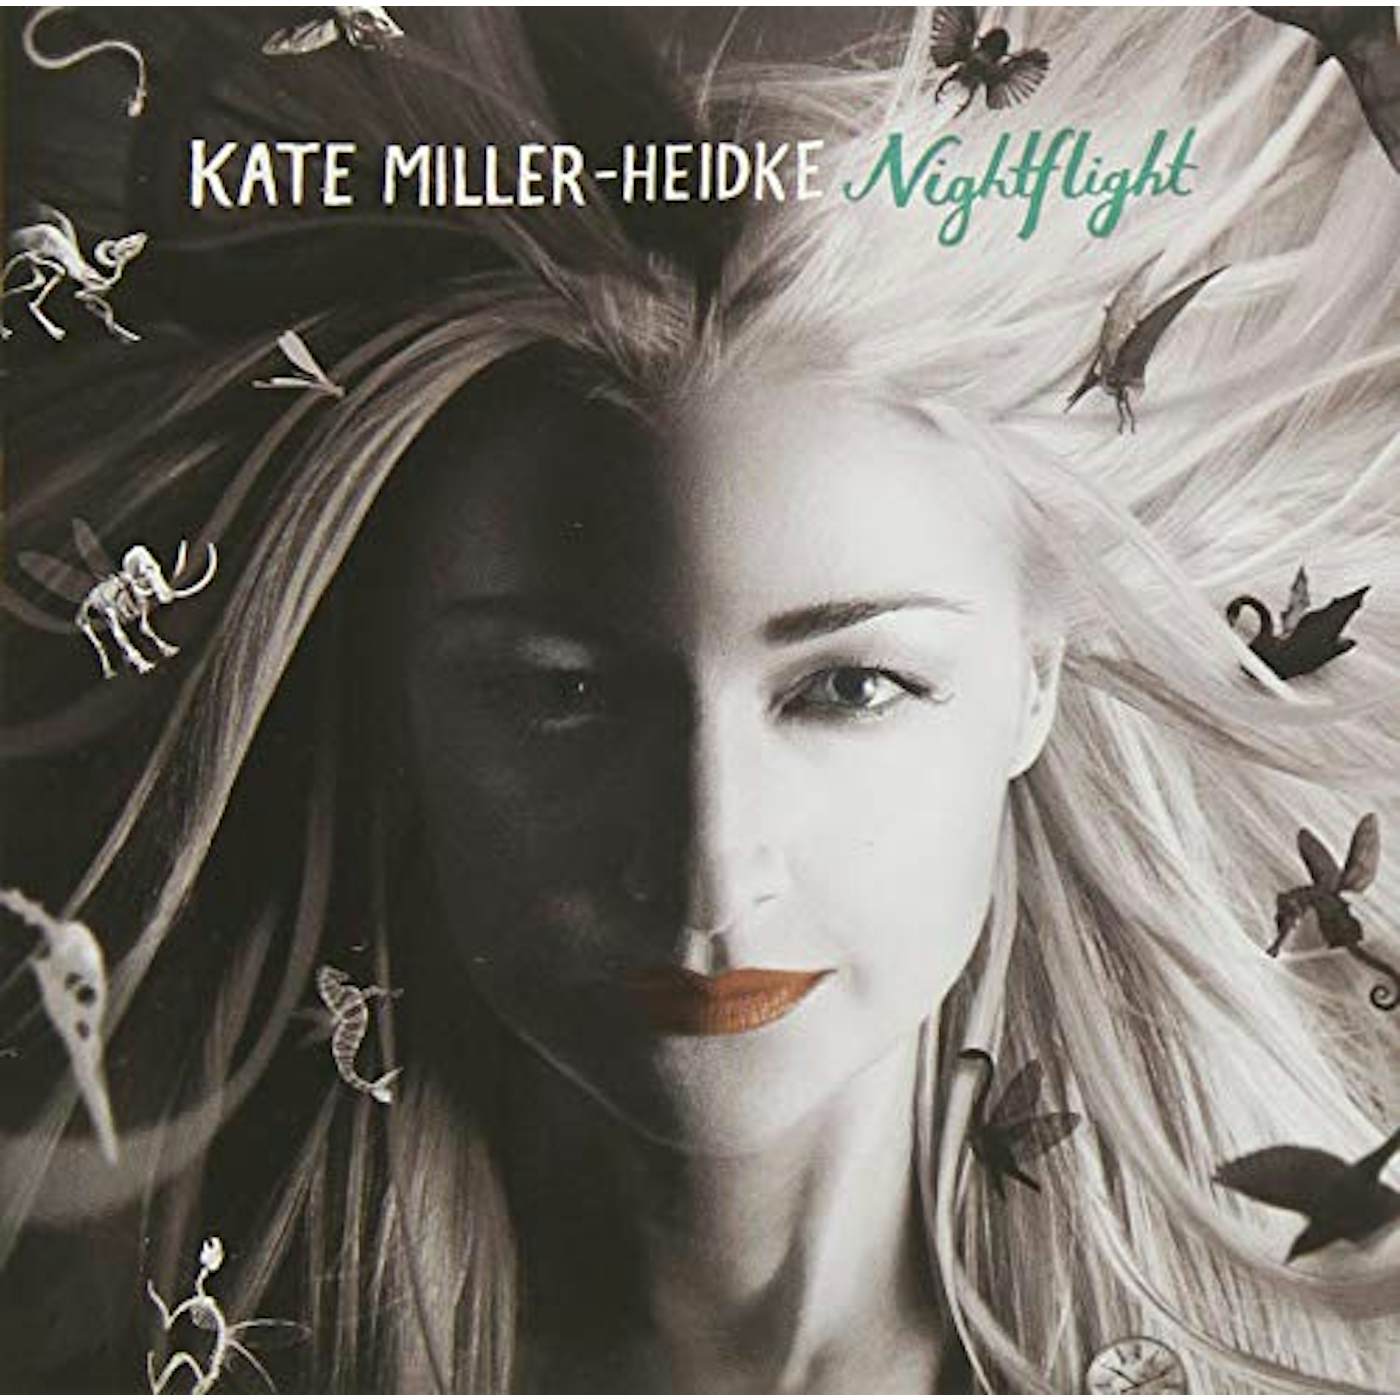 Kate Miller-Heidke NIGHTFLIGHT CD